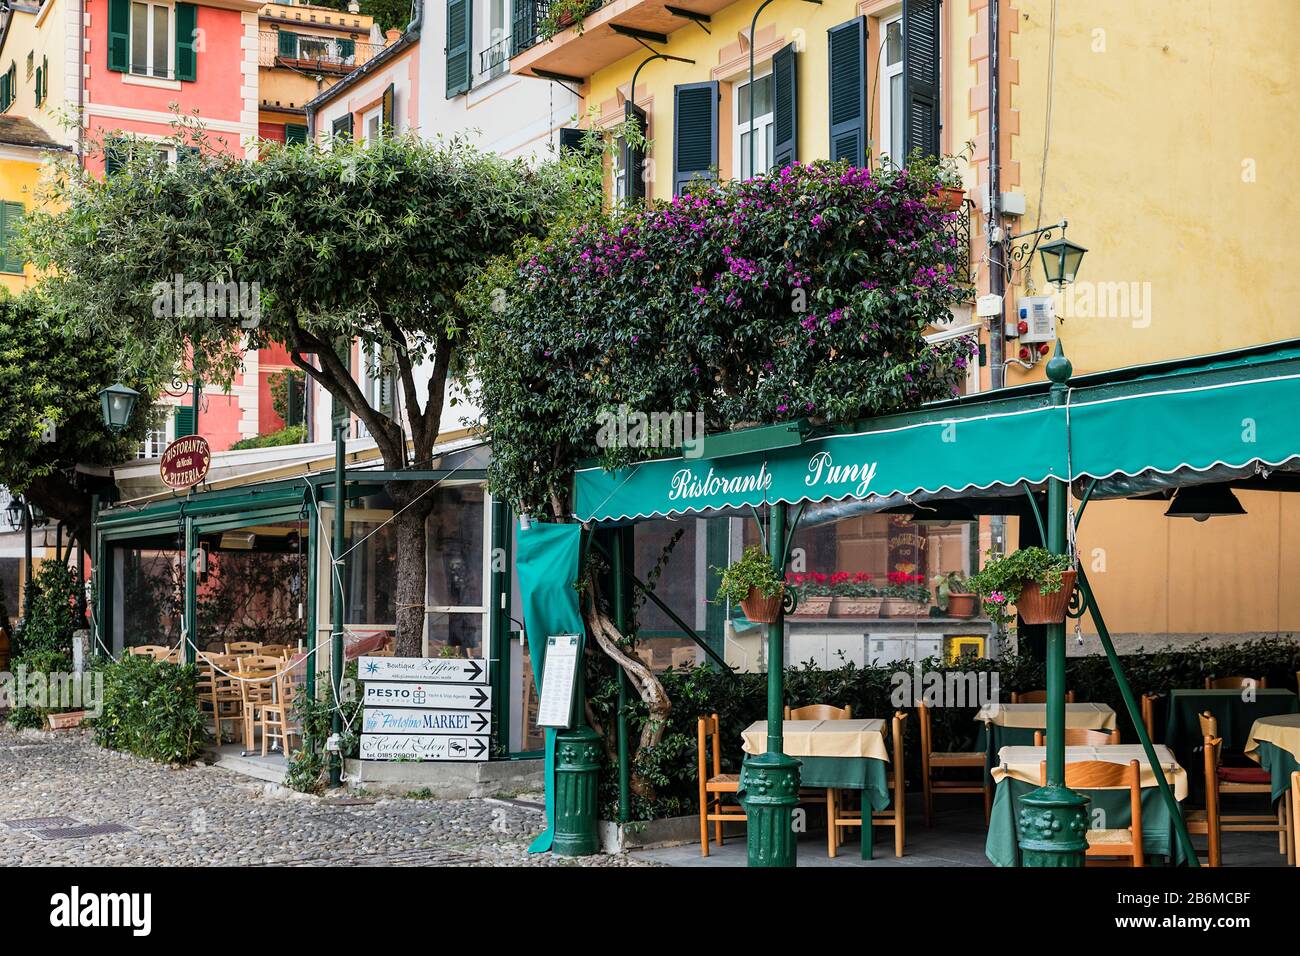 Restaurante Puny en la encantadora ciudad de Portofino. Foto de stock